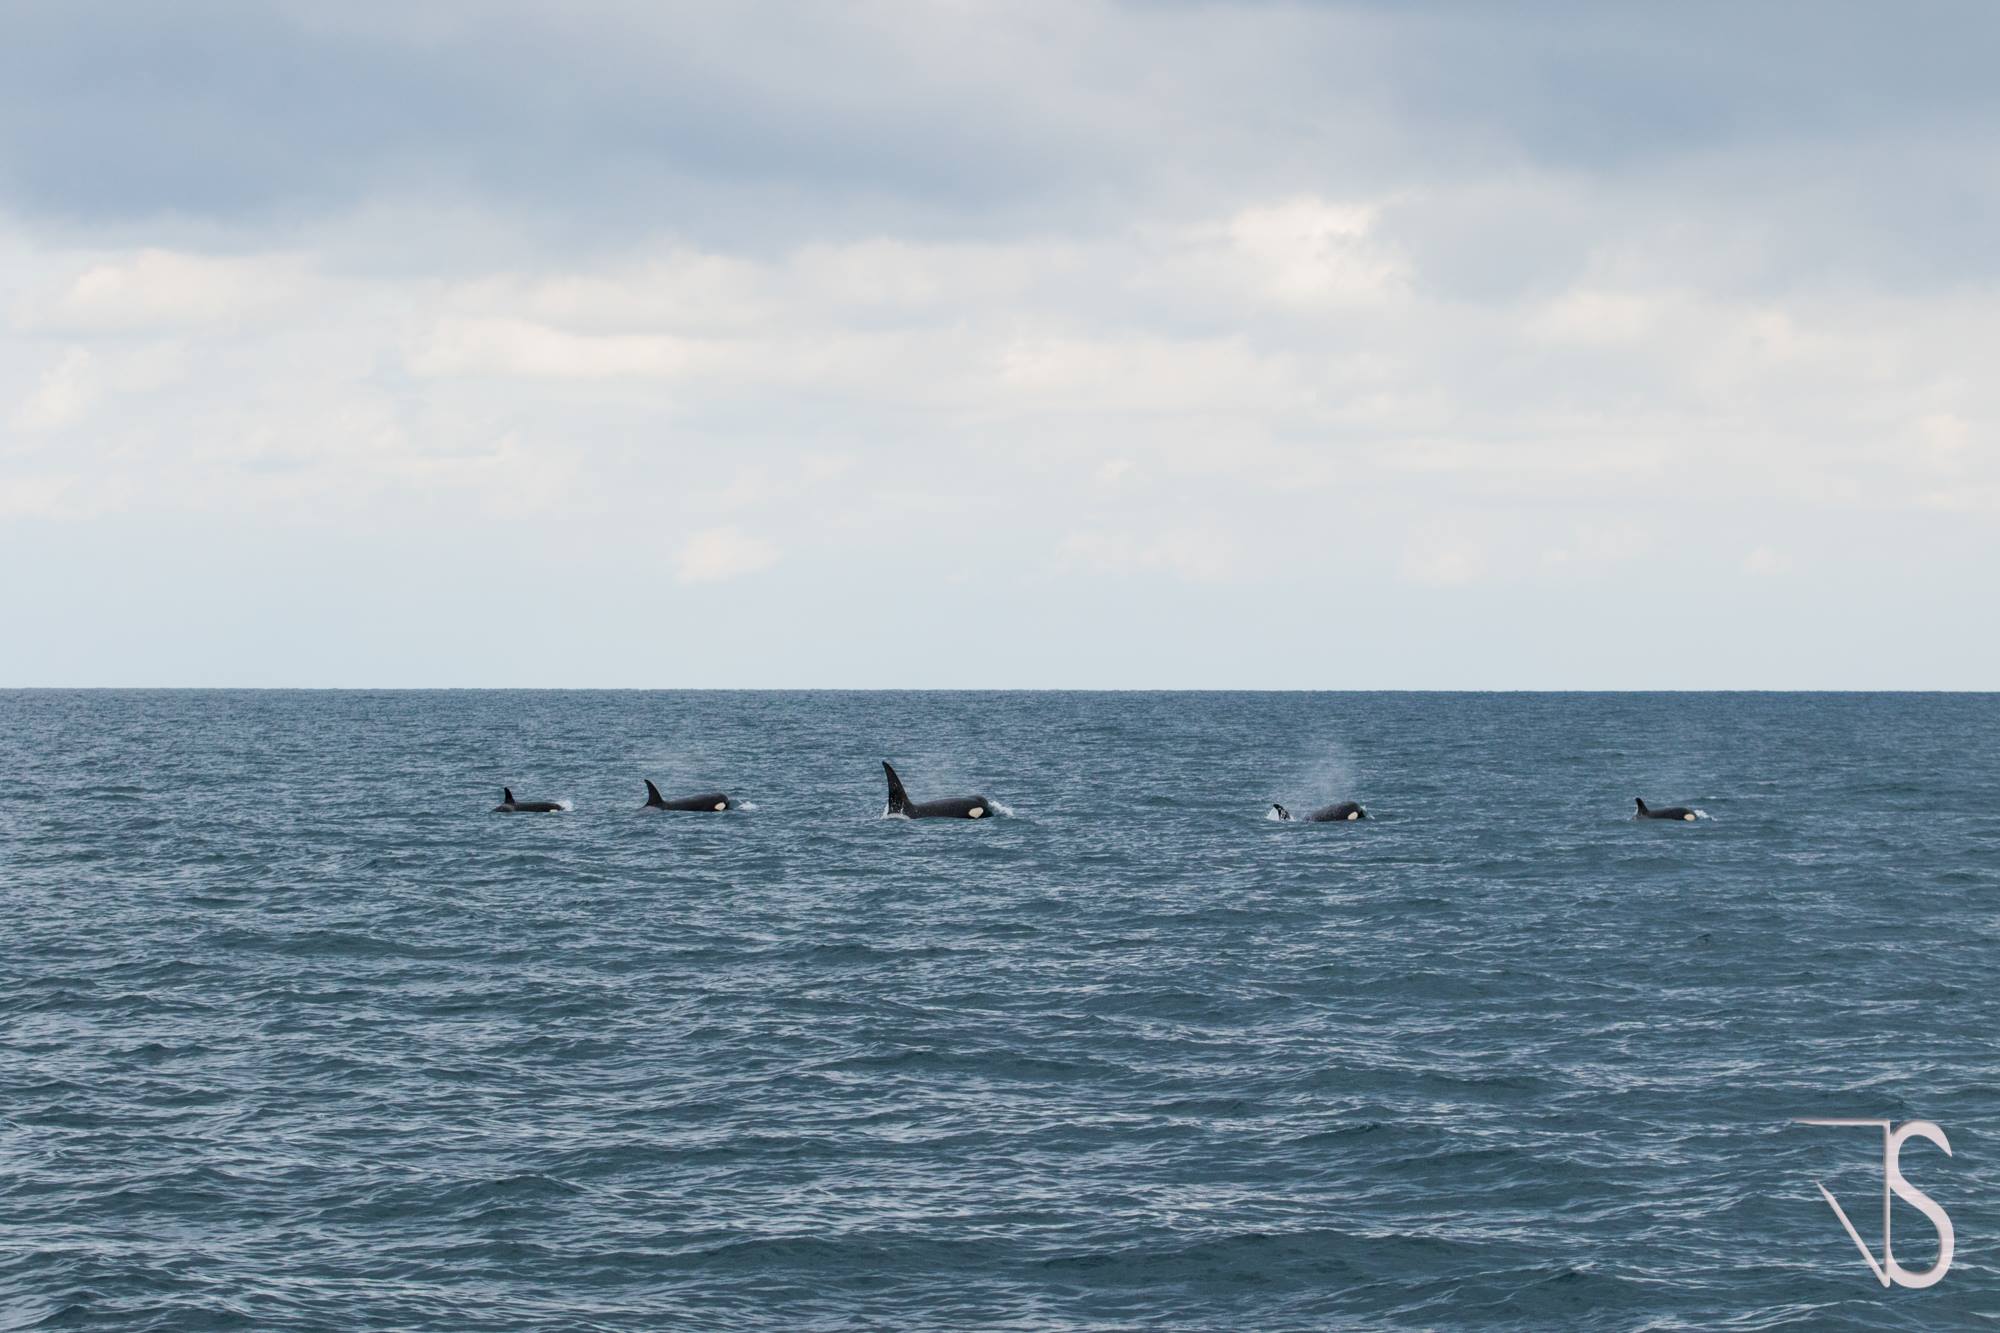 Coup de coeur de la semaine : Rencontre avec un groupe d’orques au large des côtes basques